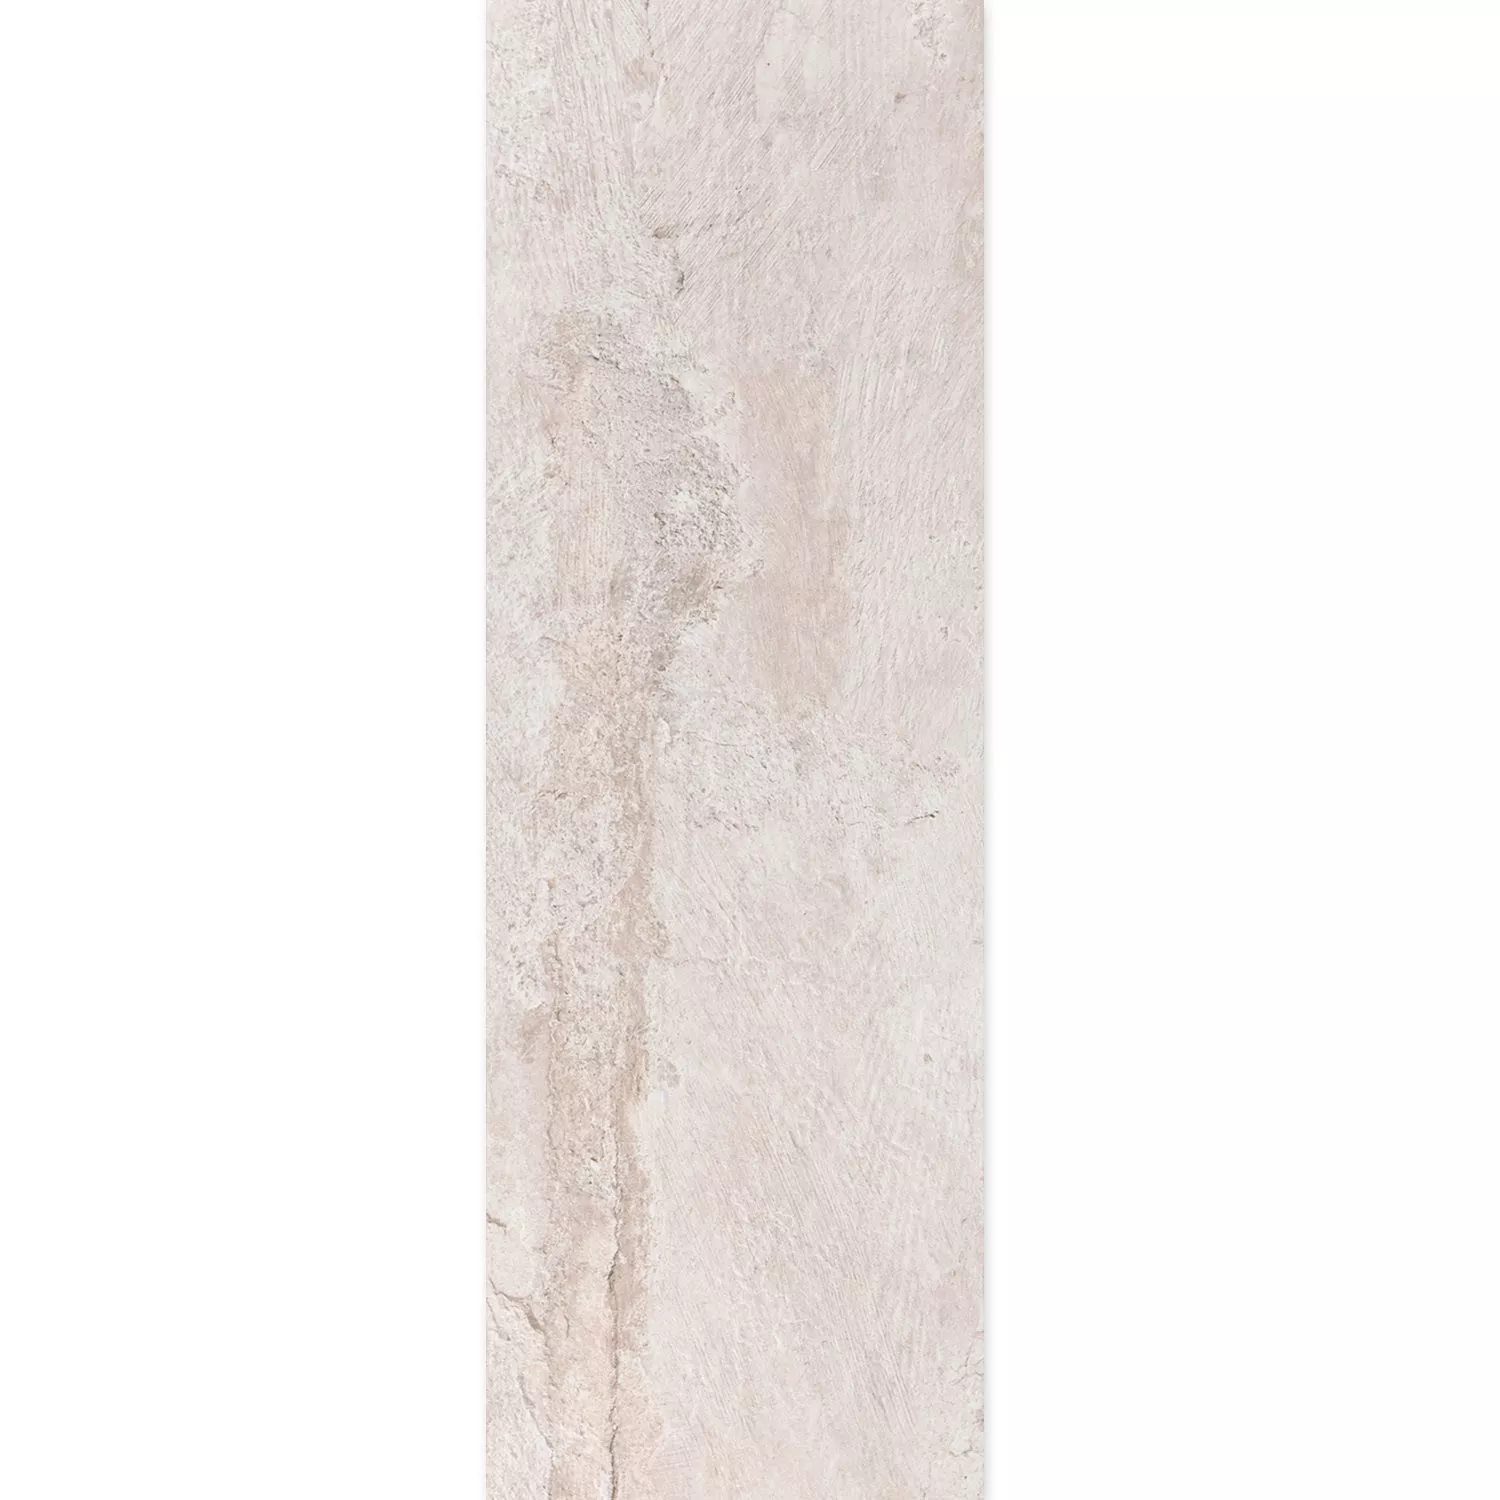 Bodenfliese Steinoptik Polaris R10 Weiß 30x120cm